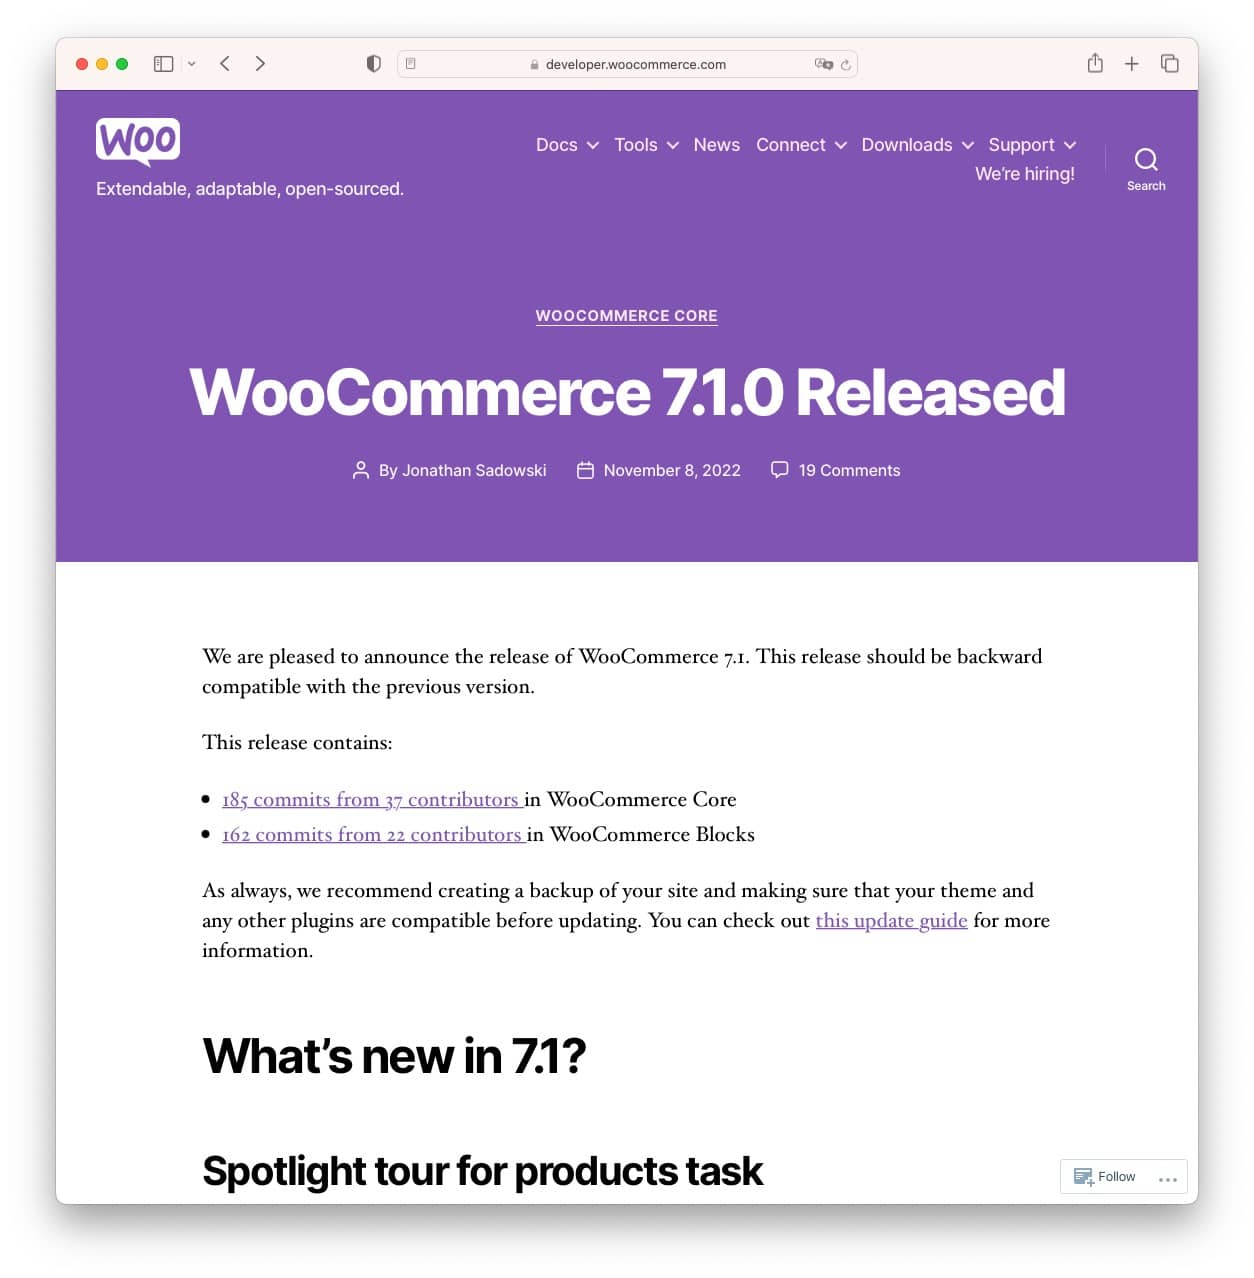 WooCommerce 7.1